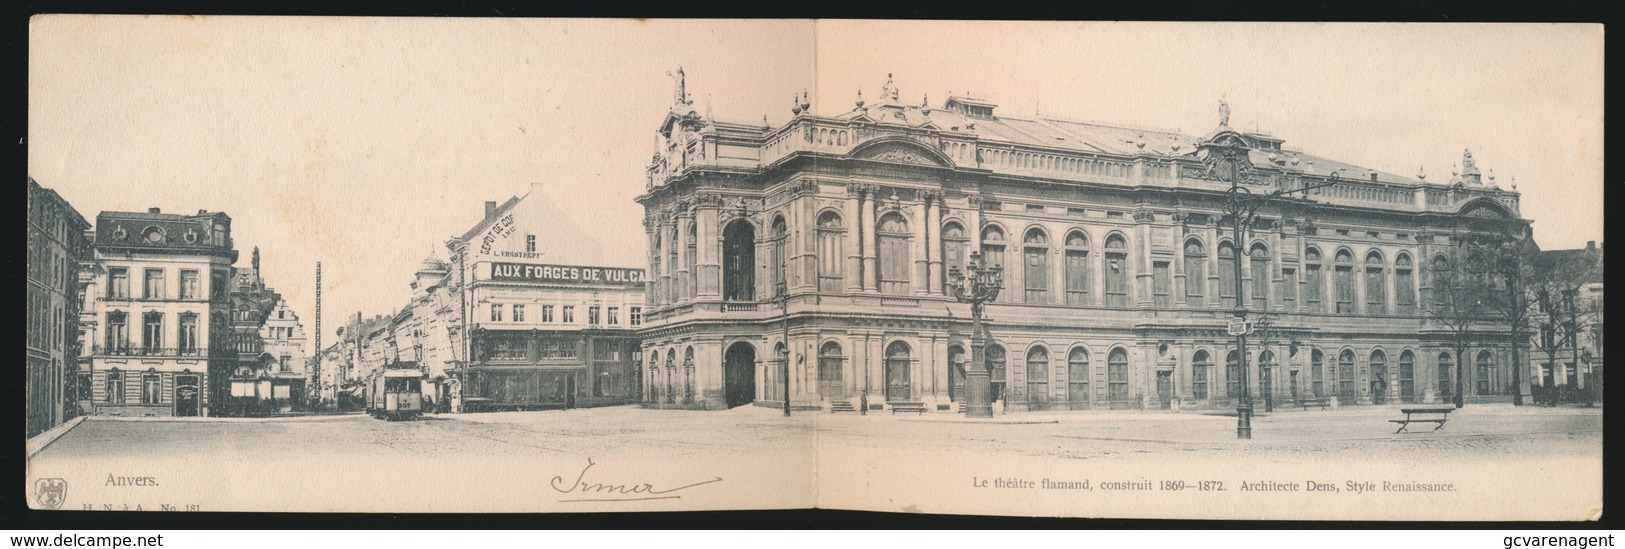 ANTWERPEN - LE THEATRE FLAMAND CONSTRUIT 1869 - 1872  PANORAMISCHE KAART - Antwerpen